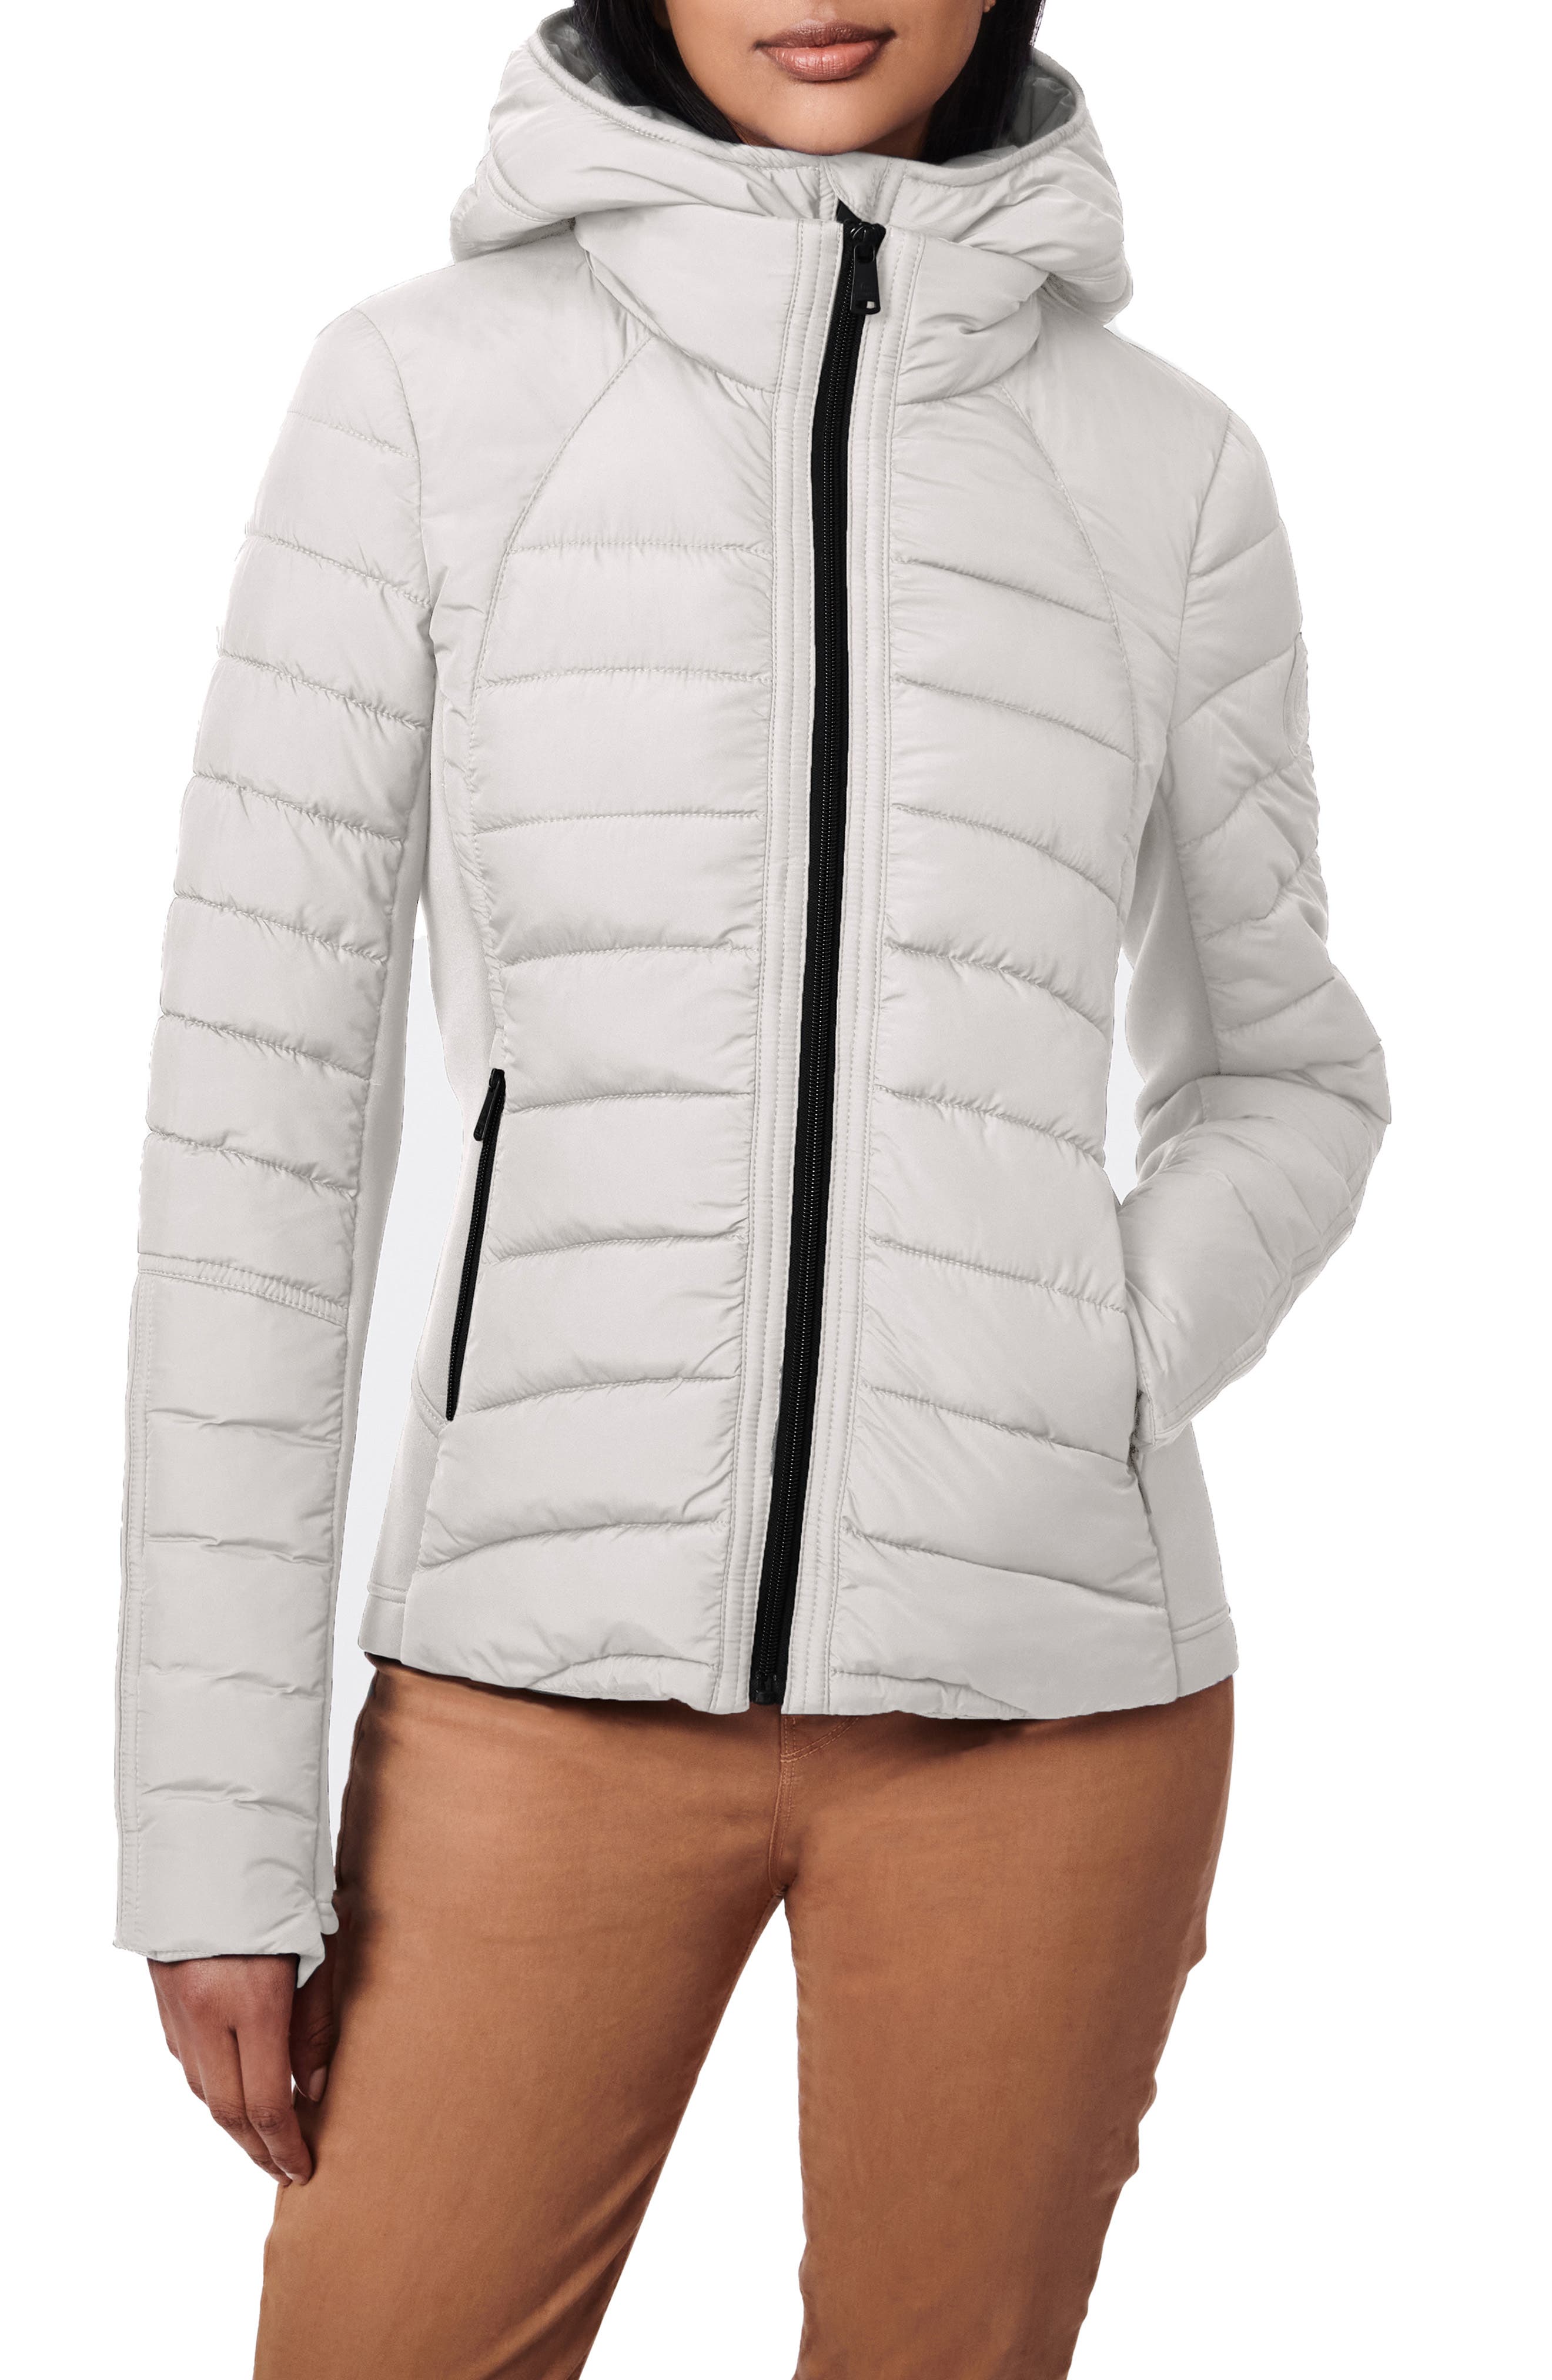 Gray/Purple XS Tenti jacket WOMEN FASHION Jackets Jacket Sports discount 67% 